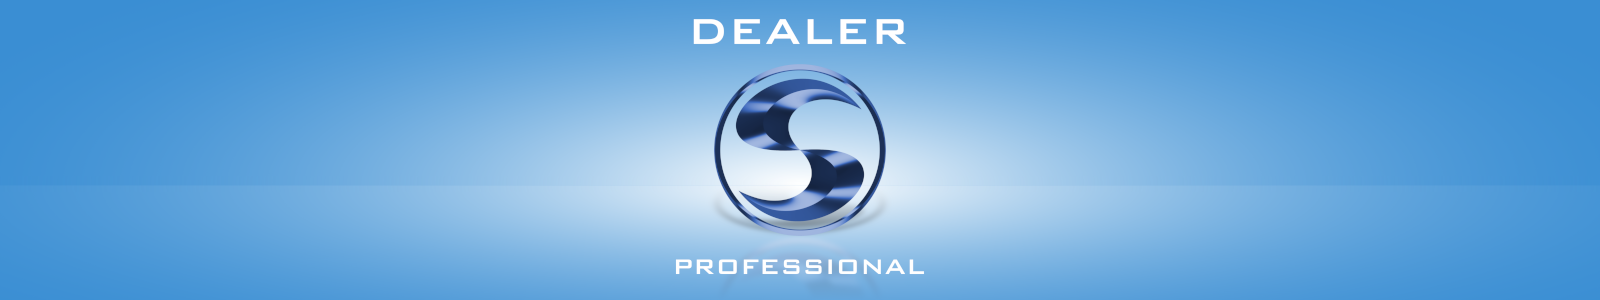 Dealer Professional